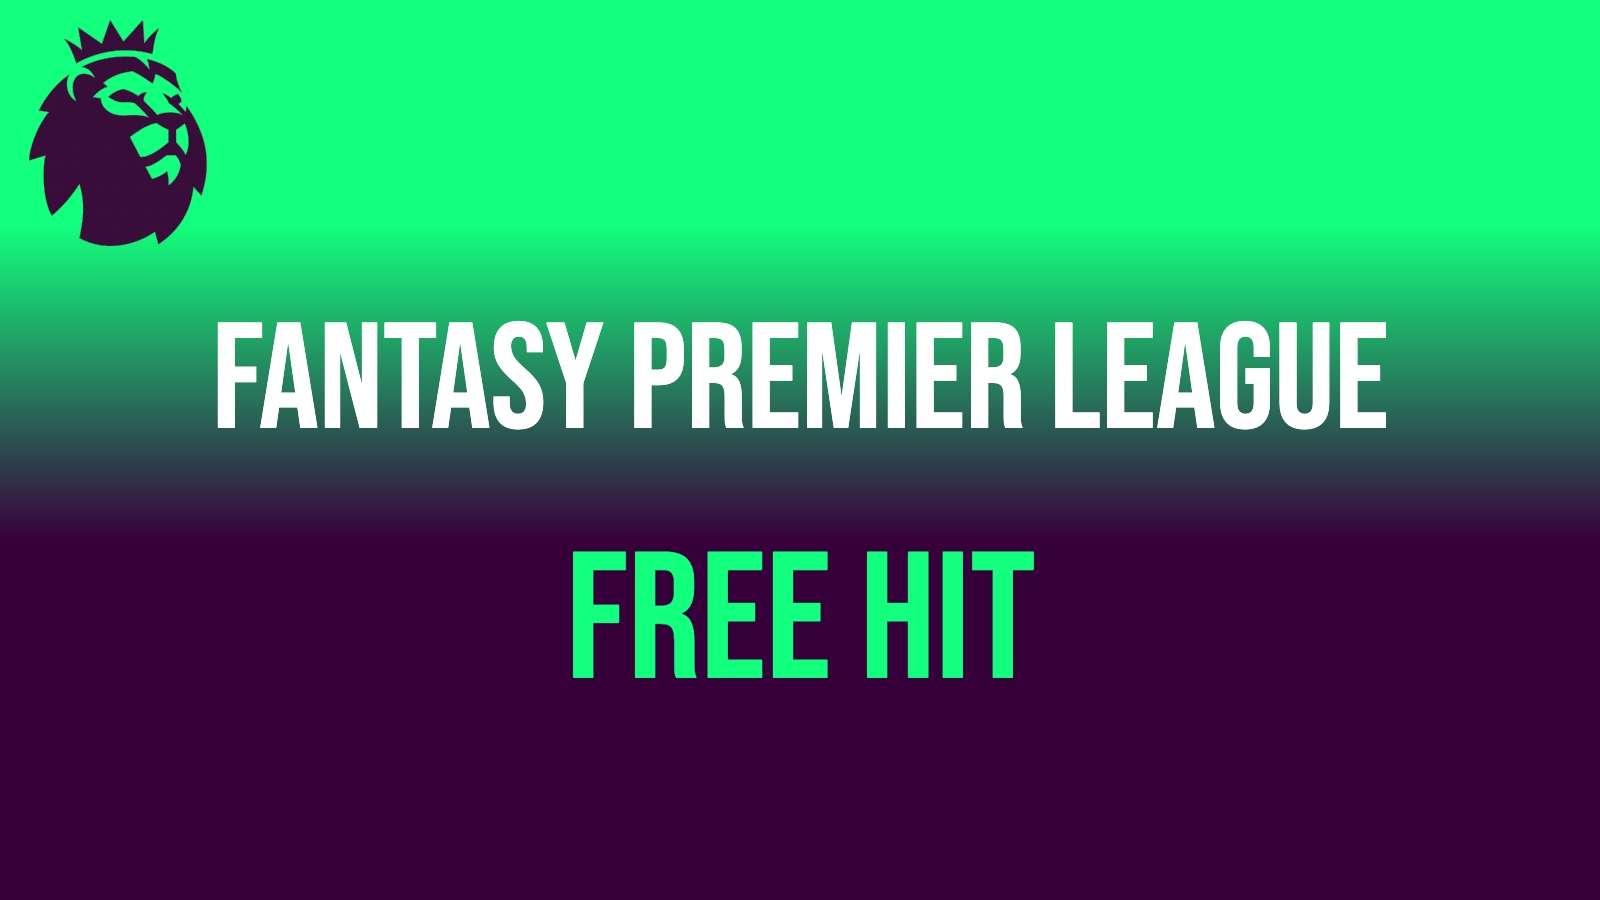 Fantasy premier League free hit with Premier League lion logo in top left corner